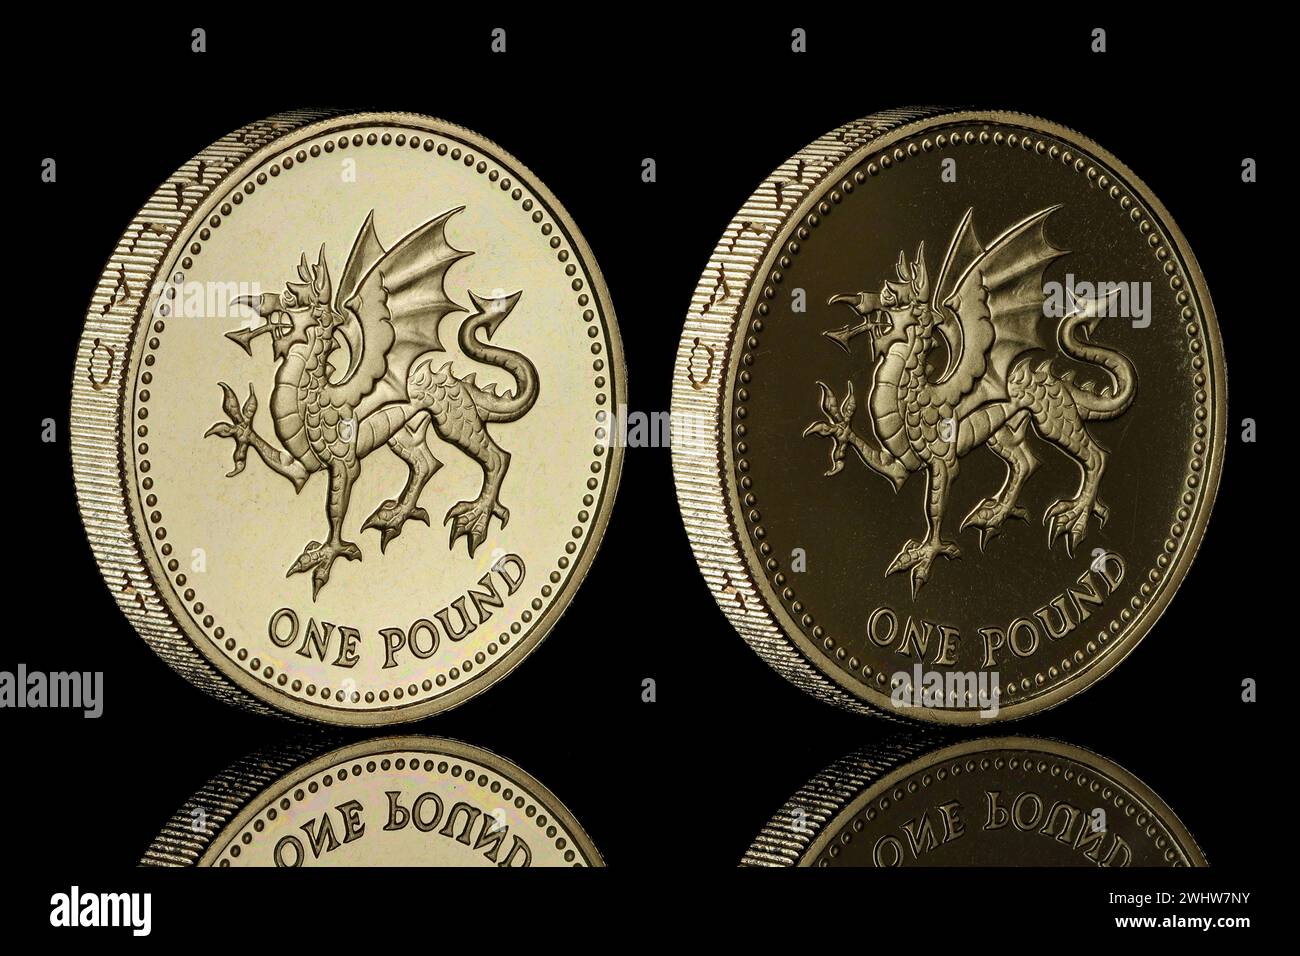 1995 preuve pièce de 1 £ mettant en vedette un passant Dragon pour représenter le pays de Galles au Royaume-Uni. Le recto montre la reine Elizabeth II Banque D'Images